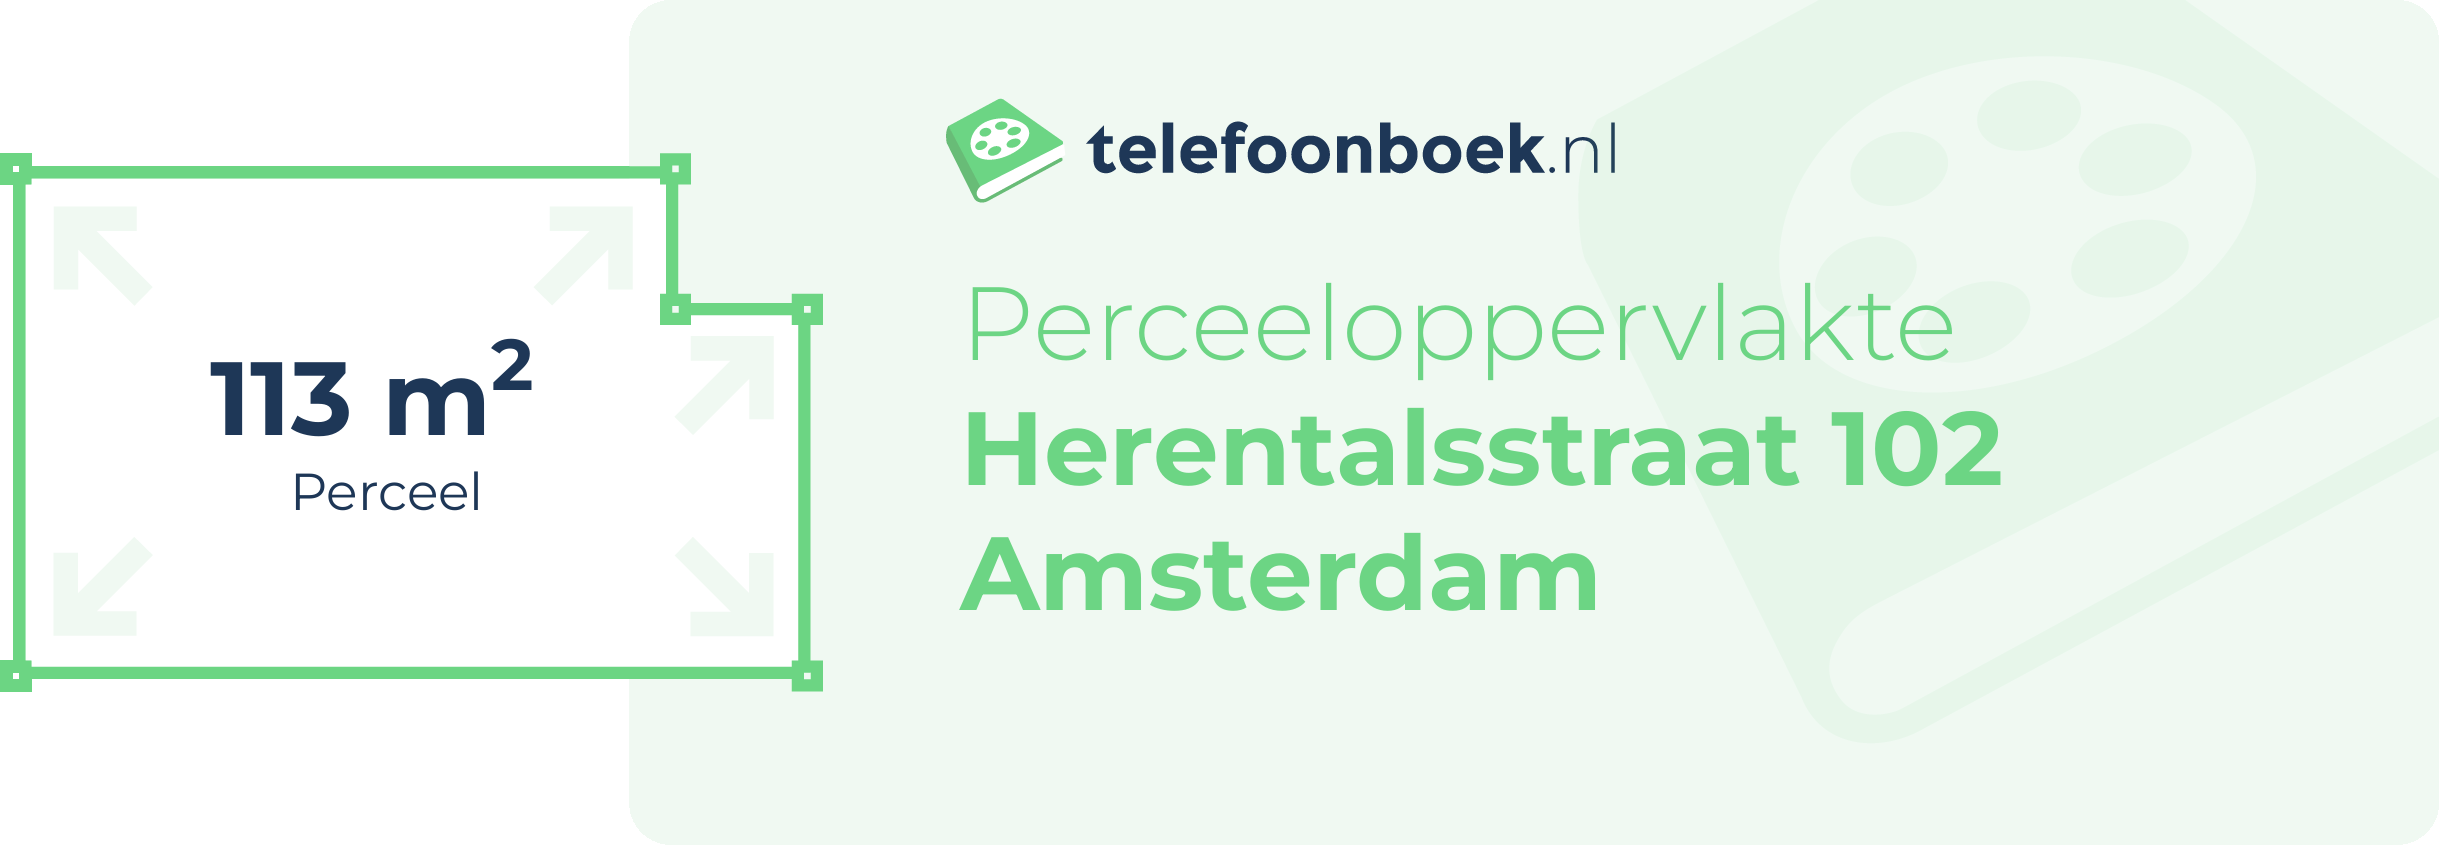 Perceeloppervlakte Herentalsstraat 102 Amsterdam